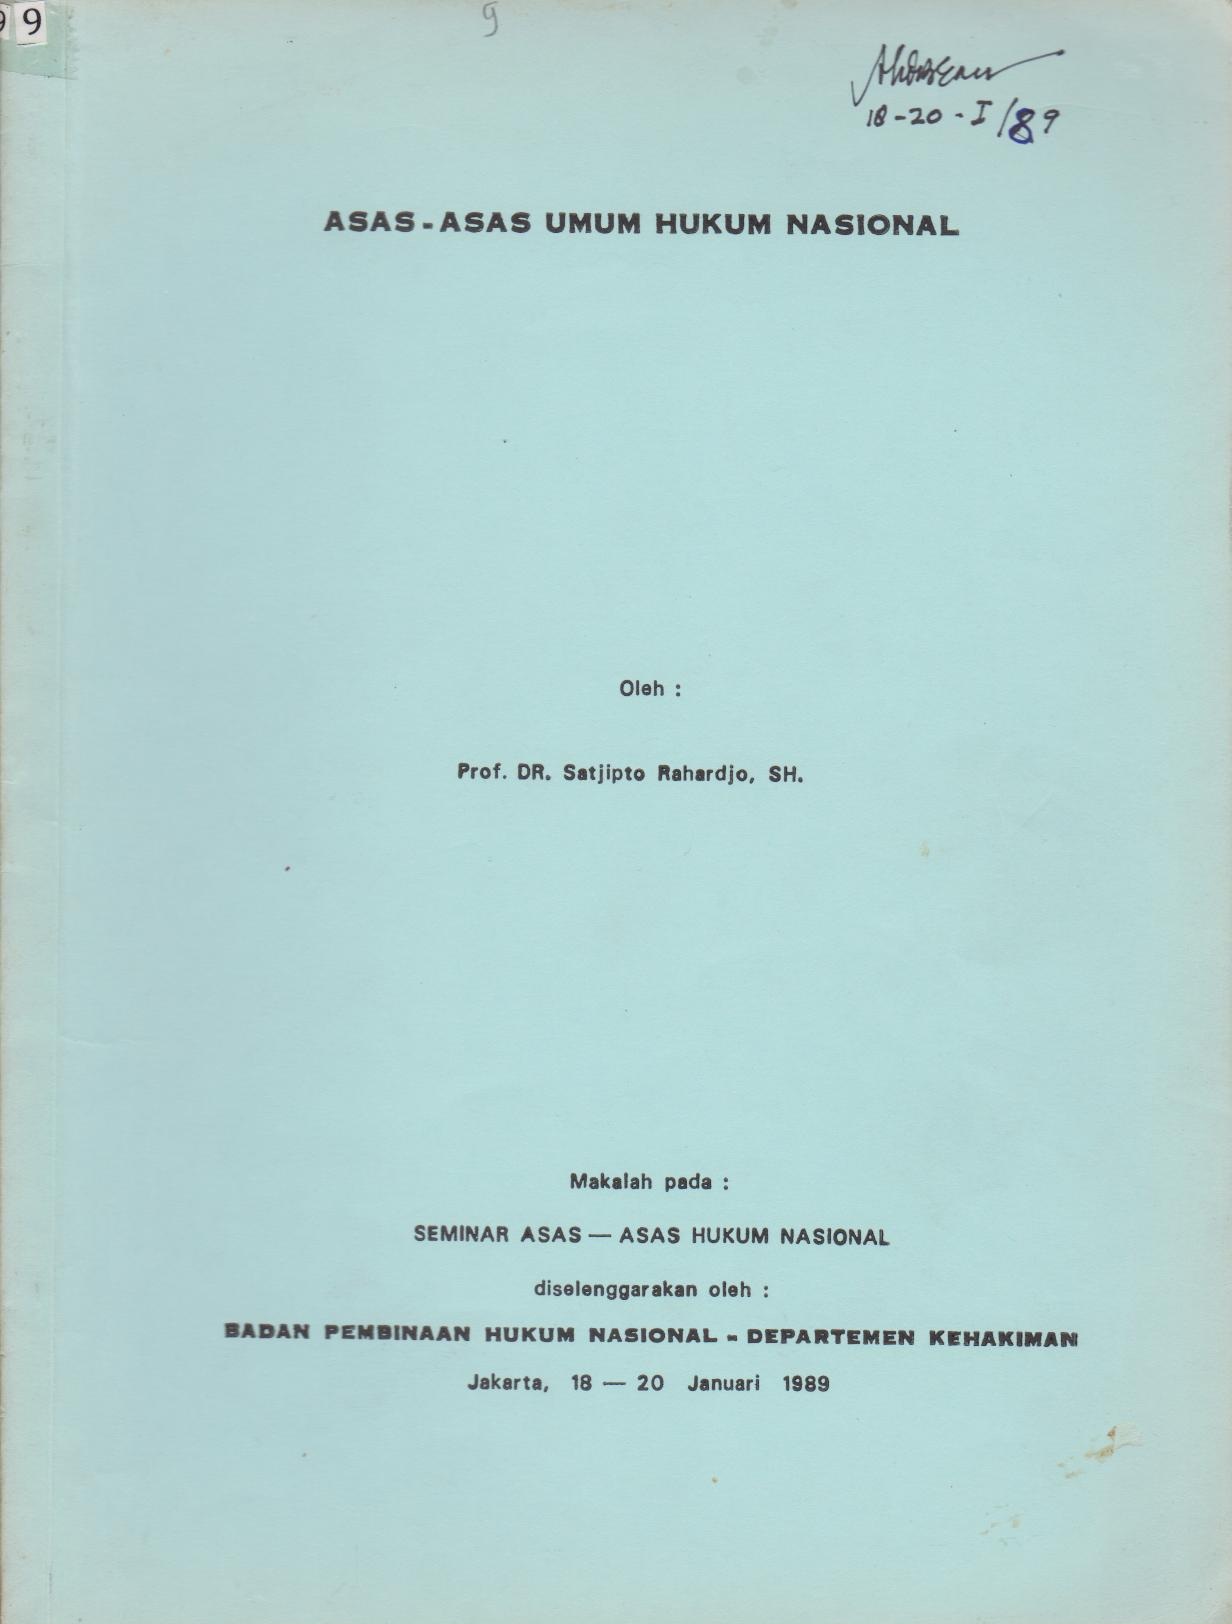 Asas - Asas Umum Hukum Nasional